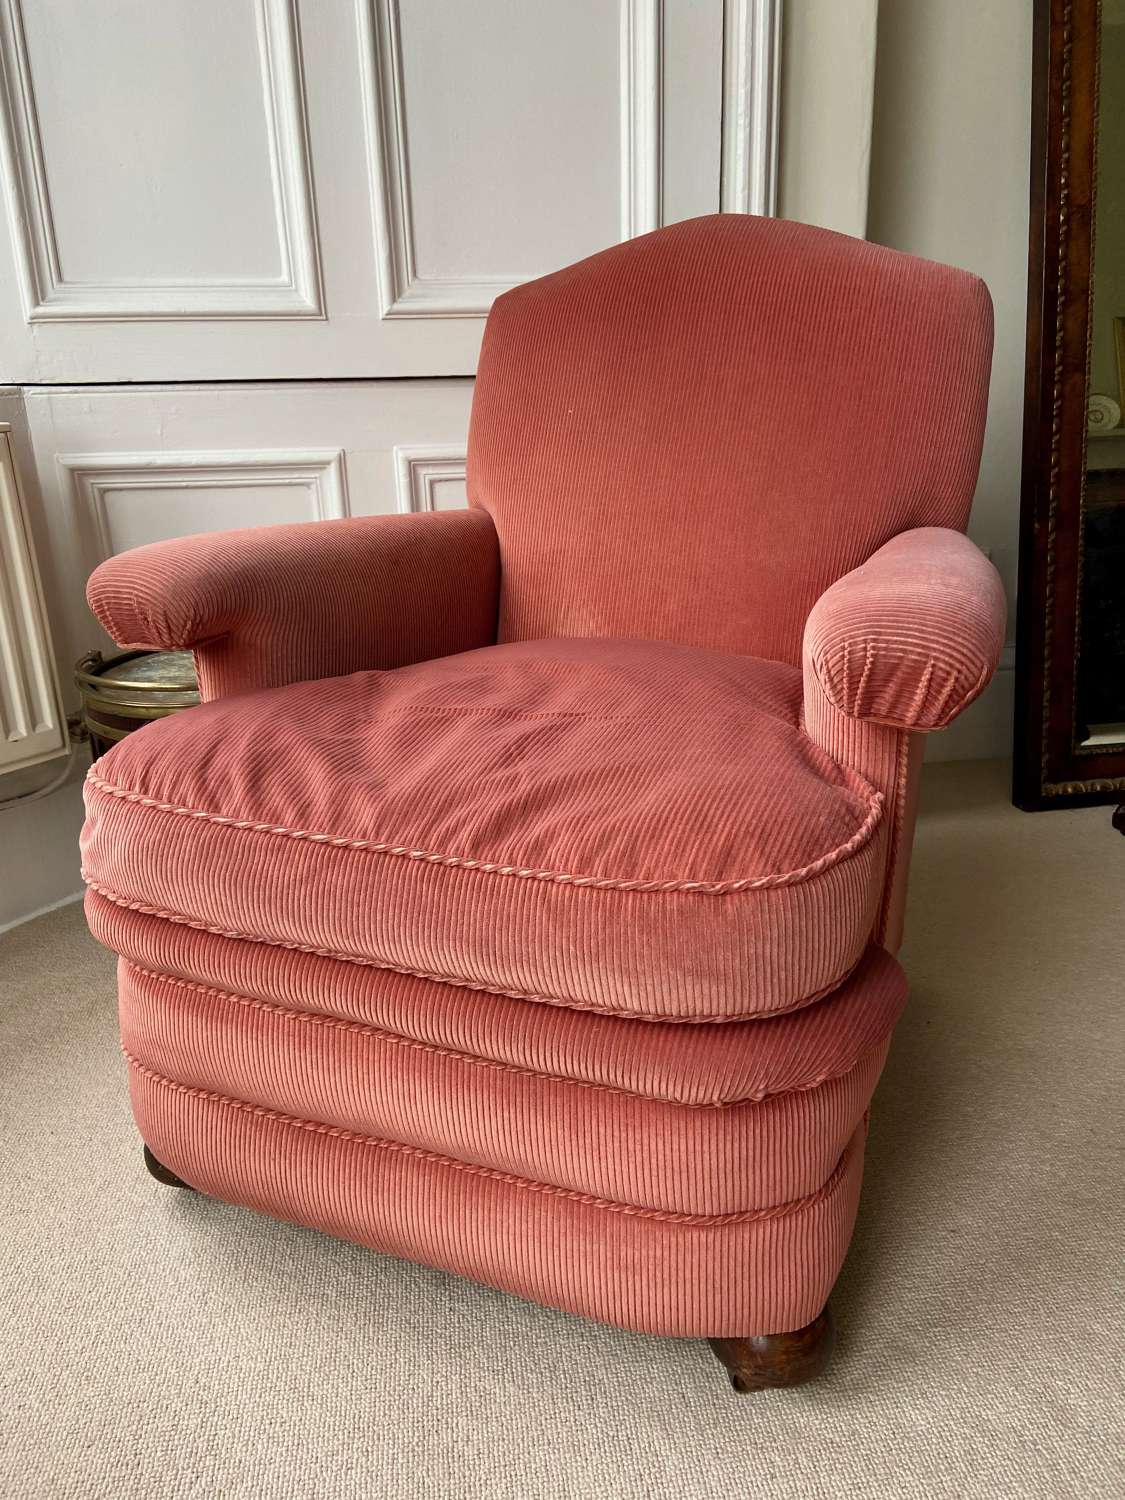 A comfortable 1930's armchair